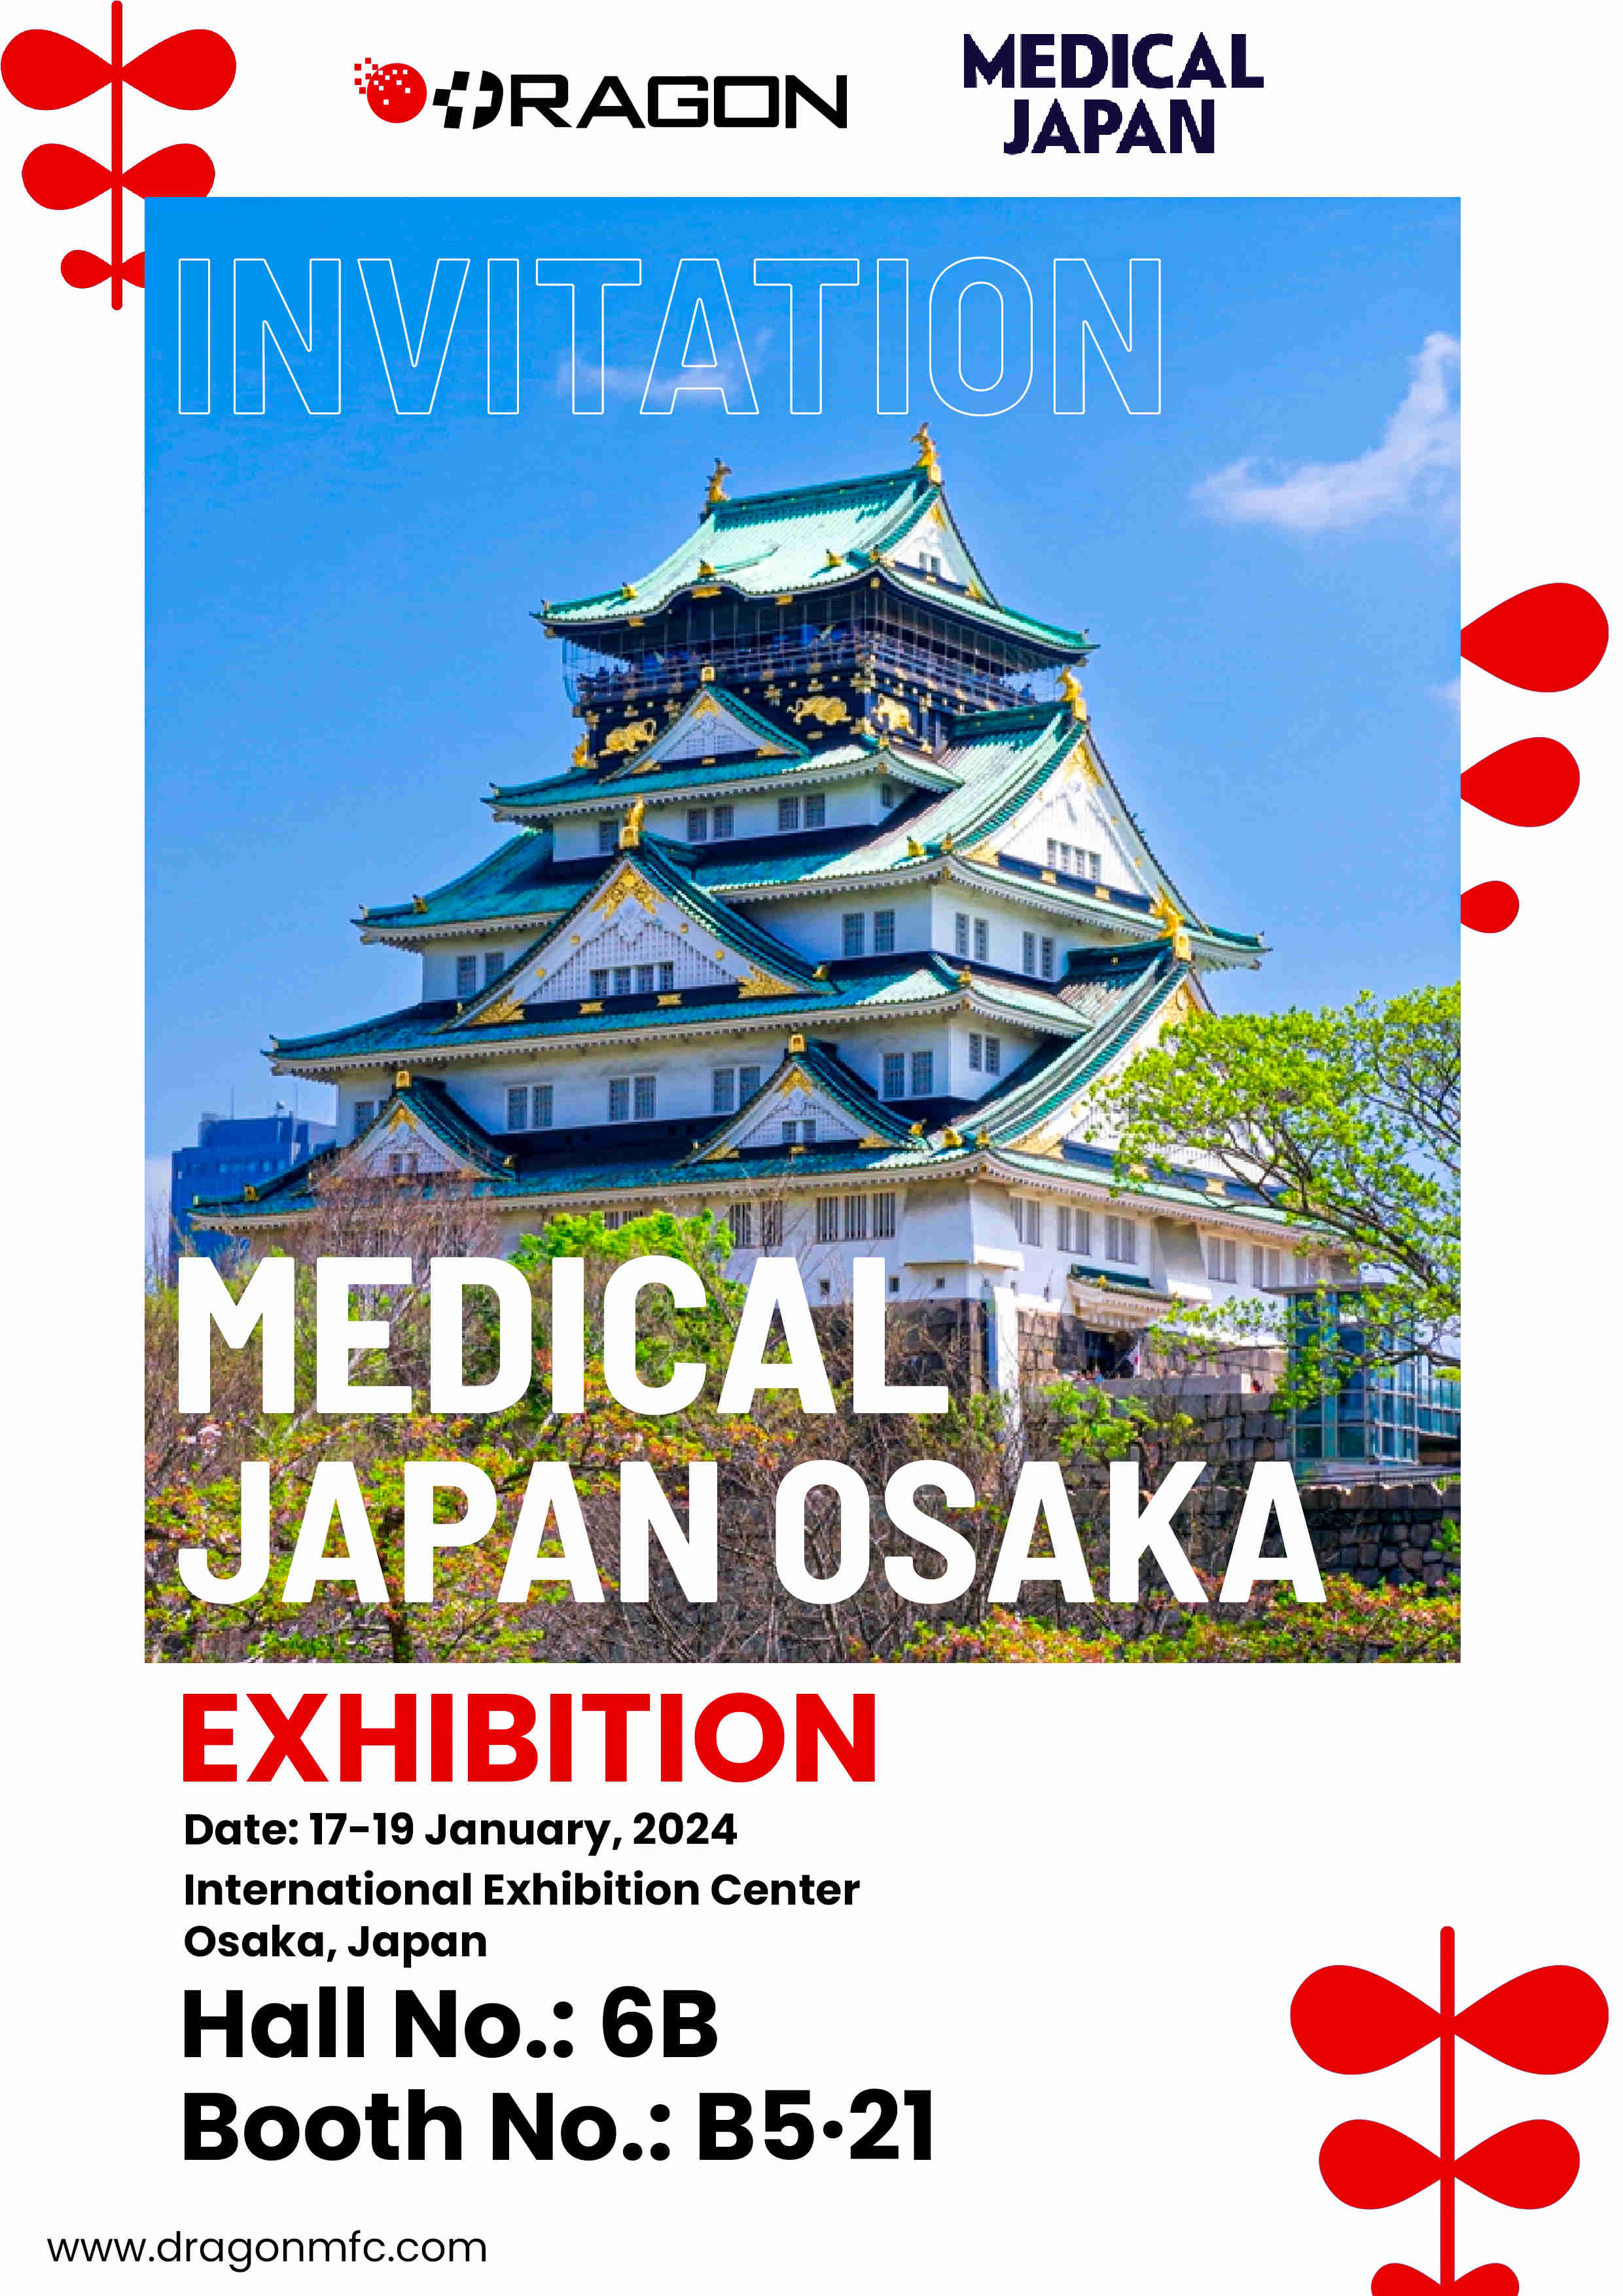 MEDICAL JAPAN OSAKA EXHIBITION